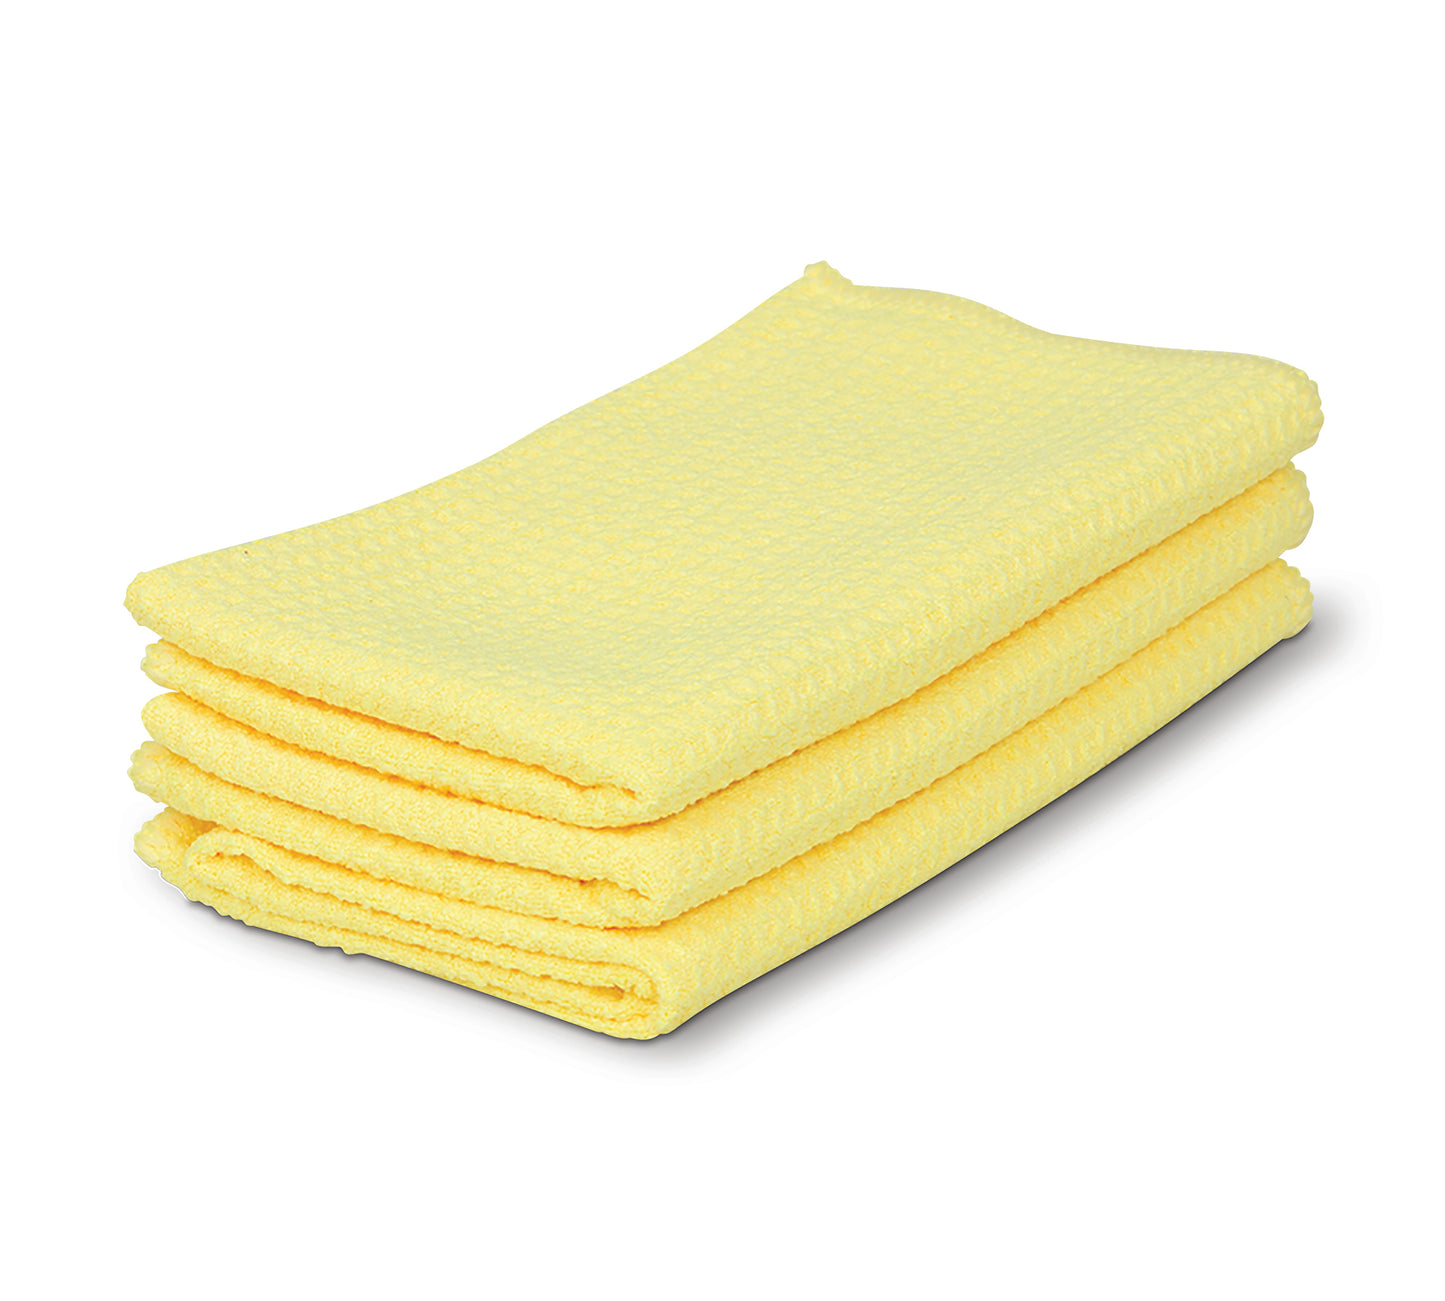 Bait Towel / Clip Wipes - Carrbiean Bl 16in X16in - BT-Carribean